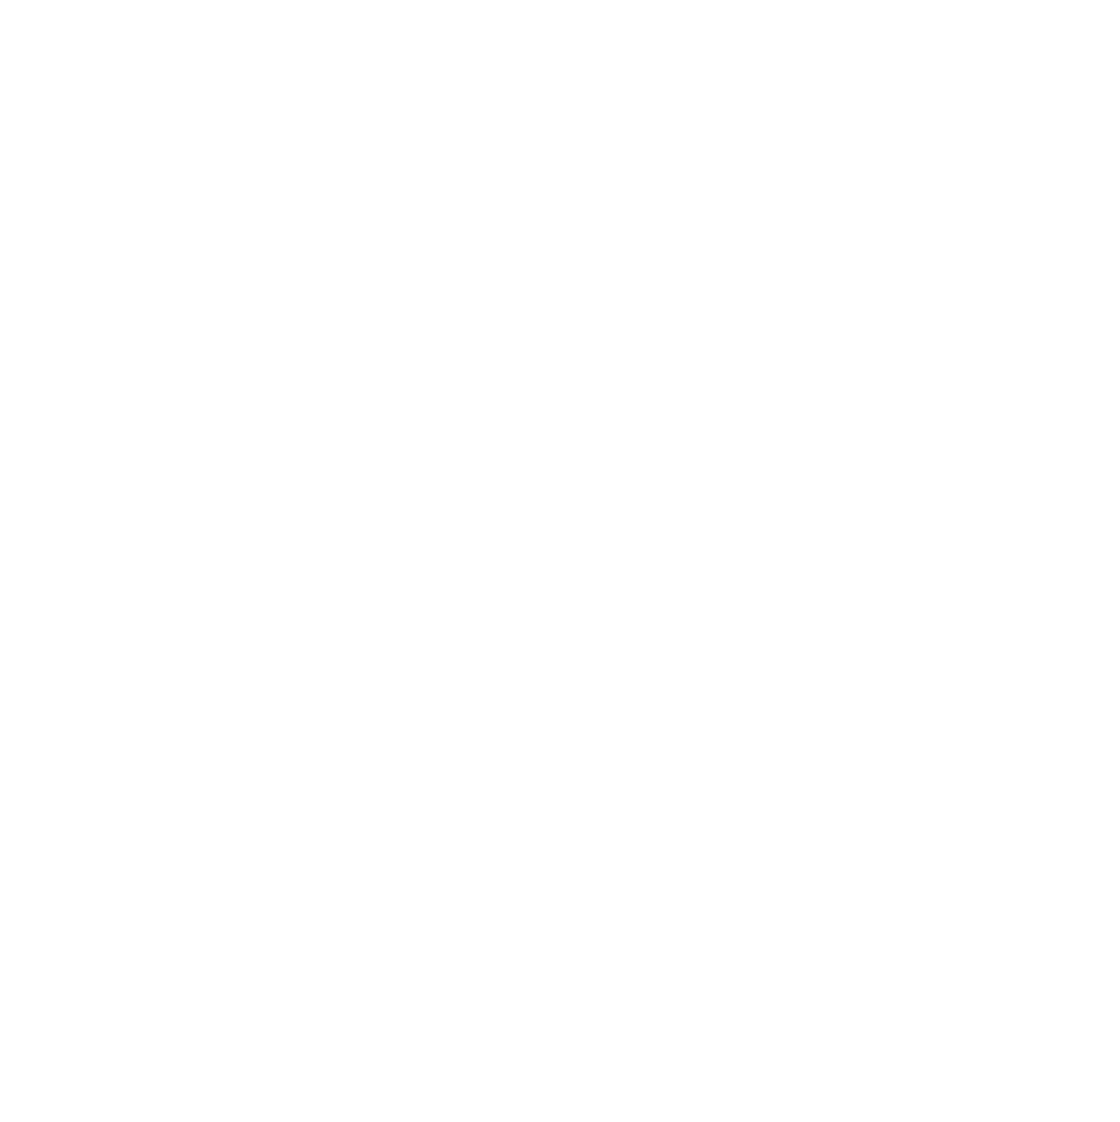 INTERNATIONAL DAYTONA